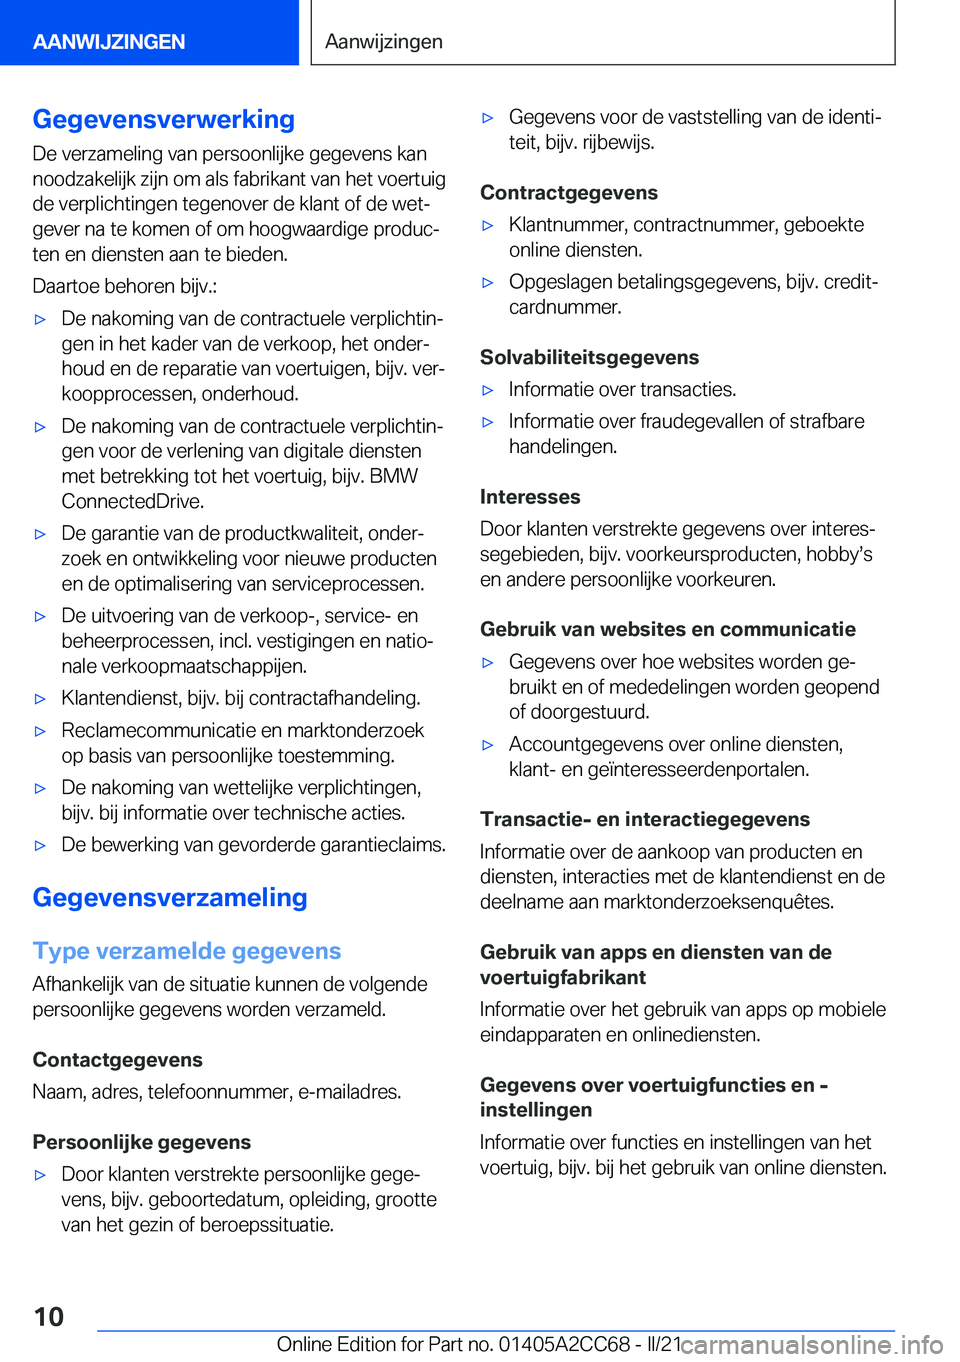 BMW 8 SERIES GRAN COUPE 2022  Instructieboekjes (in Dutch) �G�e�g�e�v�e�n�s�v�e�r�w�e�r�k�i�n�g
�D�e��v�e�r�z�a�m�e�l�i�n�g��v�a�n��p�e�r�s�o�o�n�l�i�j�k�e��g�e�g�e�v�e�n�s��k�a�n
�n�o�o�d�z�a�k�e�l�i�j�k��z�i�j�n��o�m��a�l�s��f�a�b�r�i�k�a�n�t��v�a